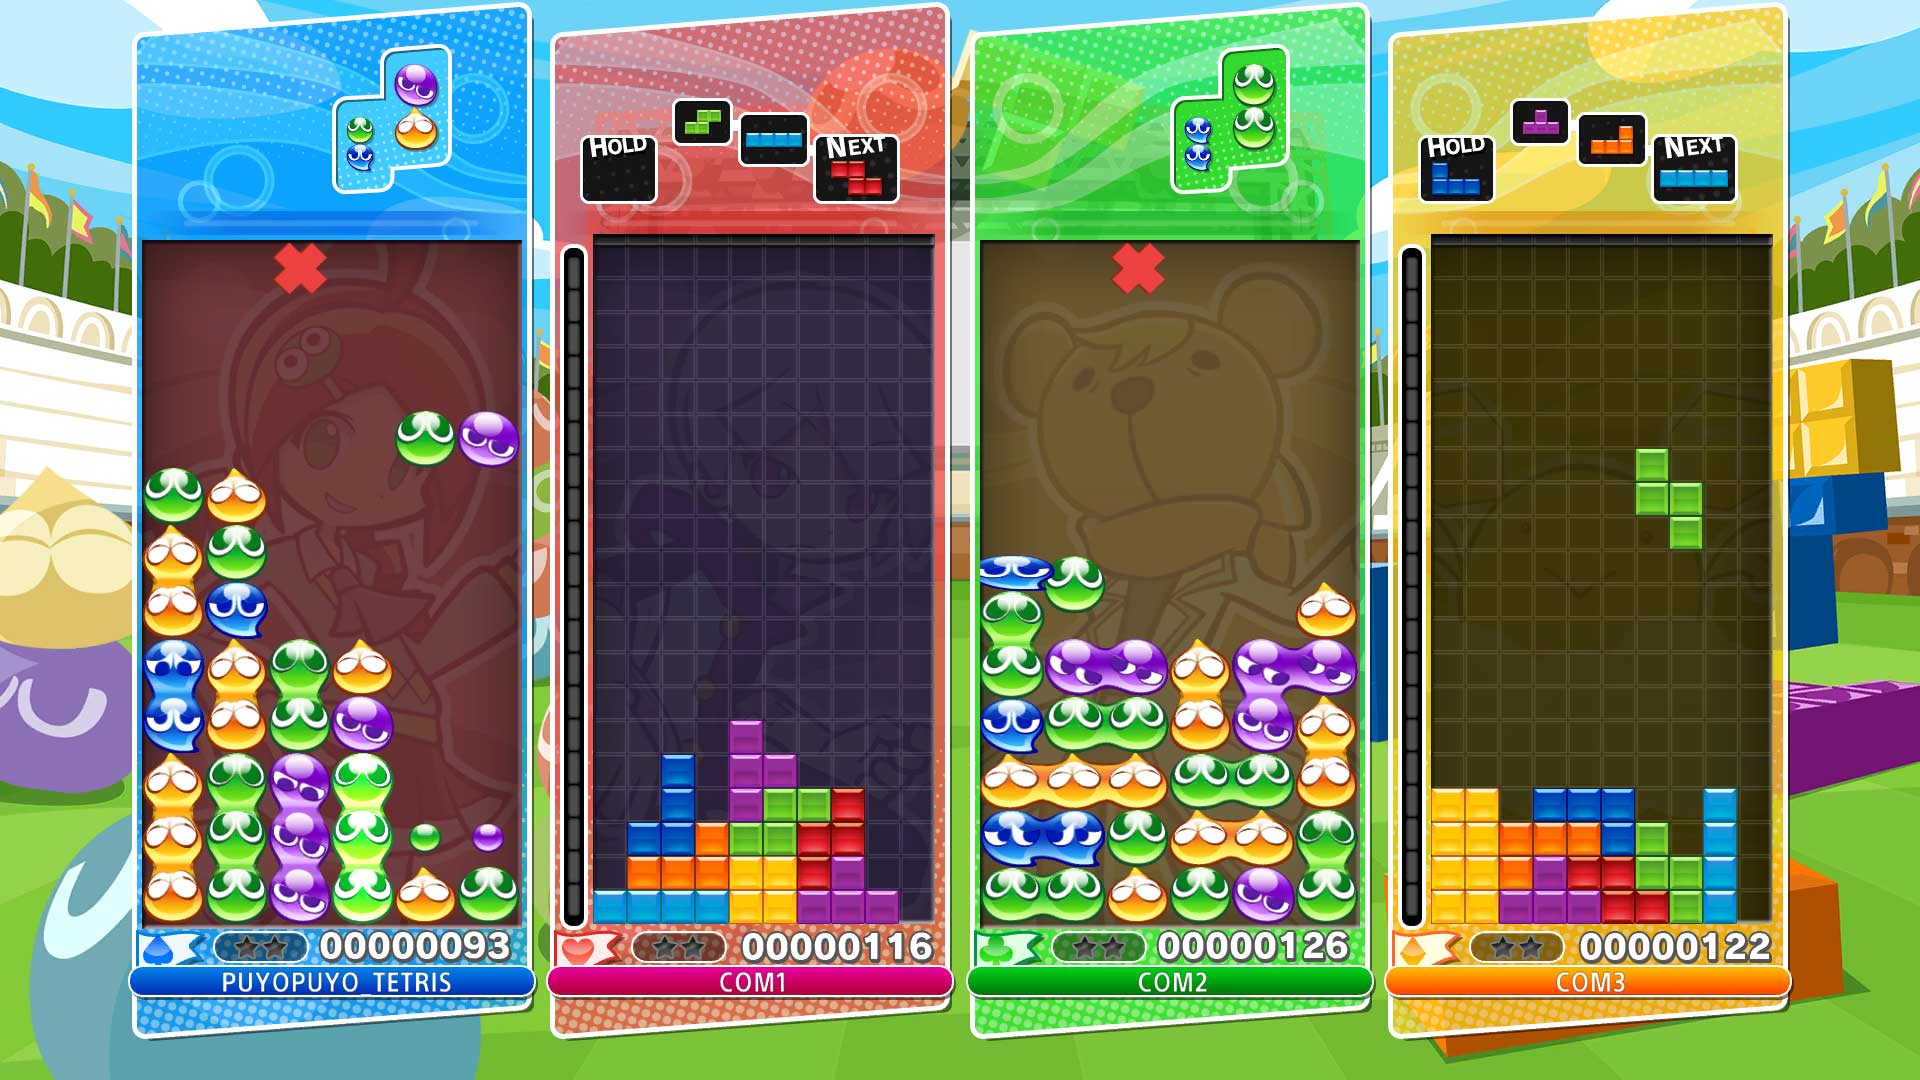 Puyo Puyo Tetris - Apr 25